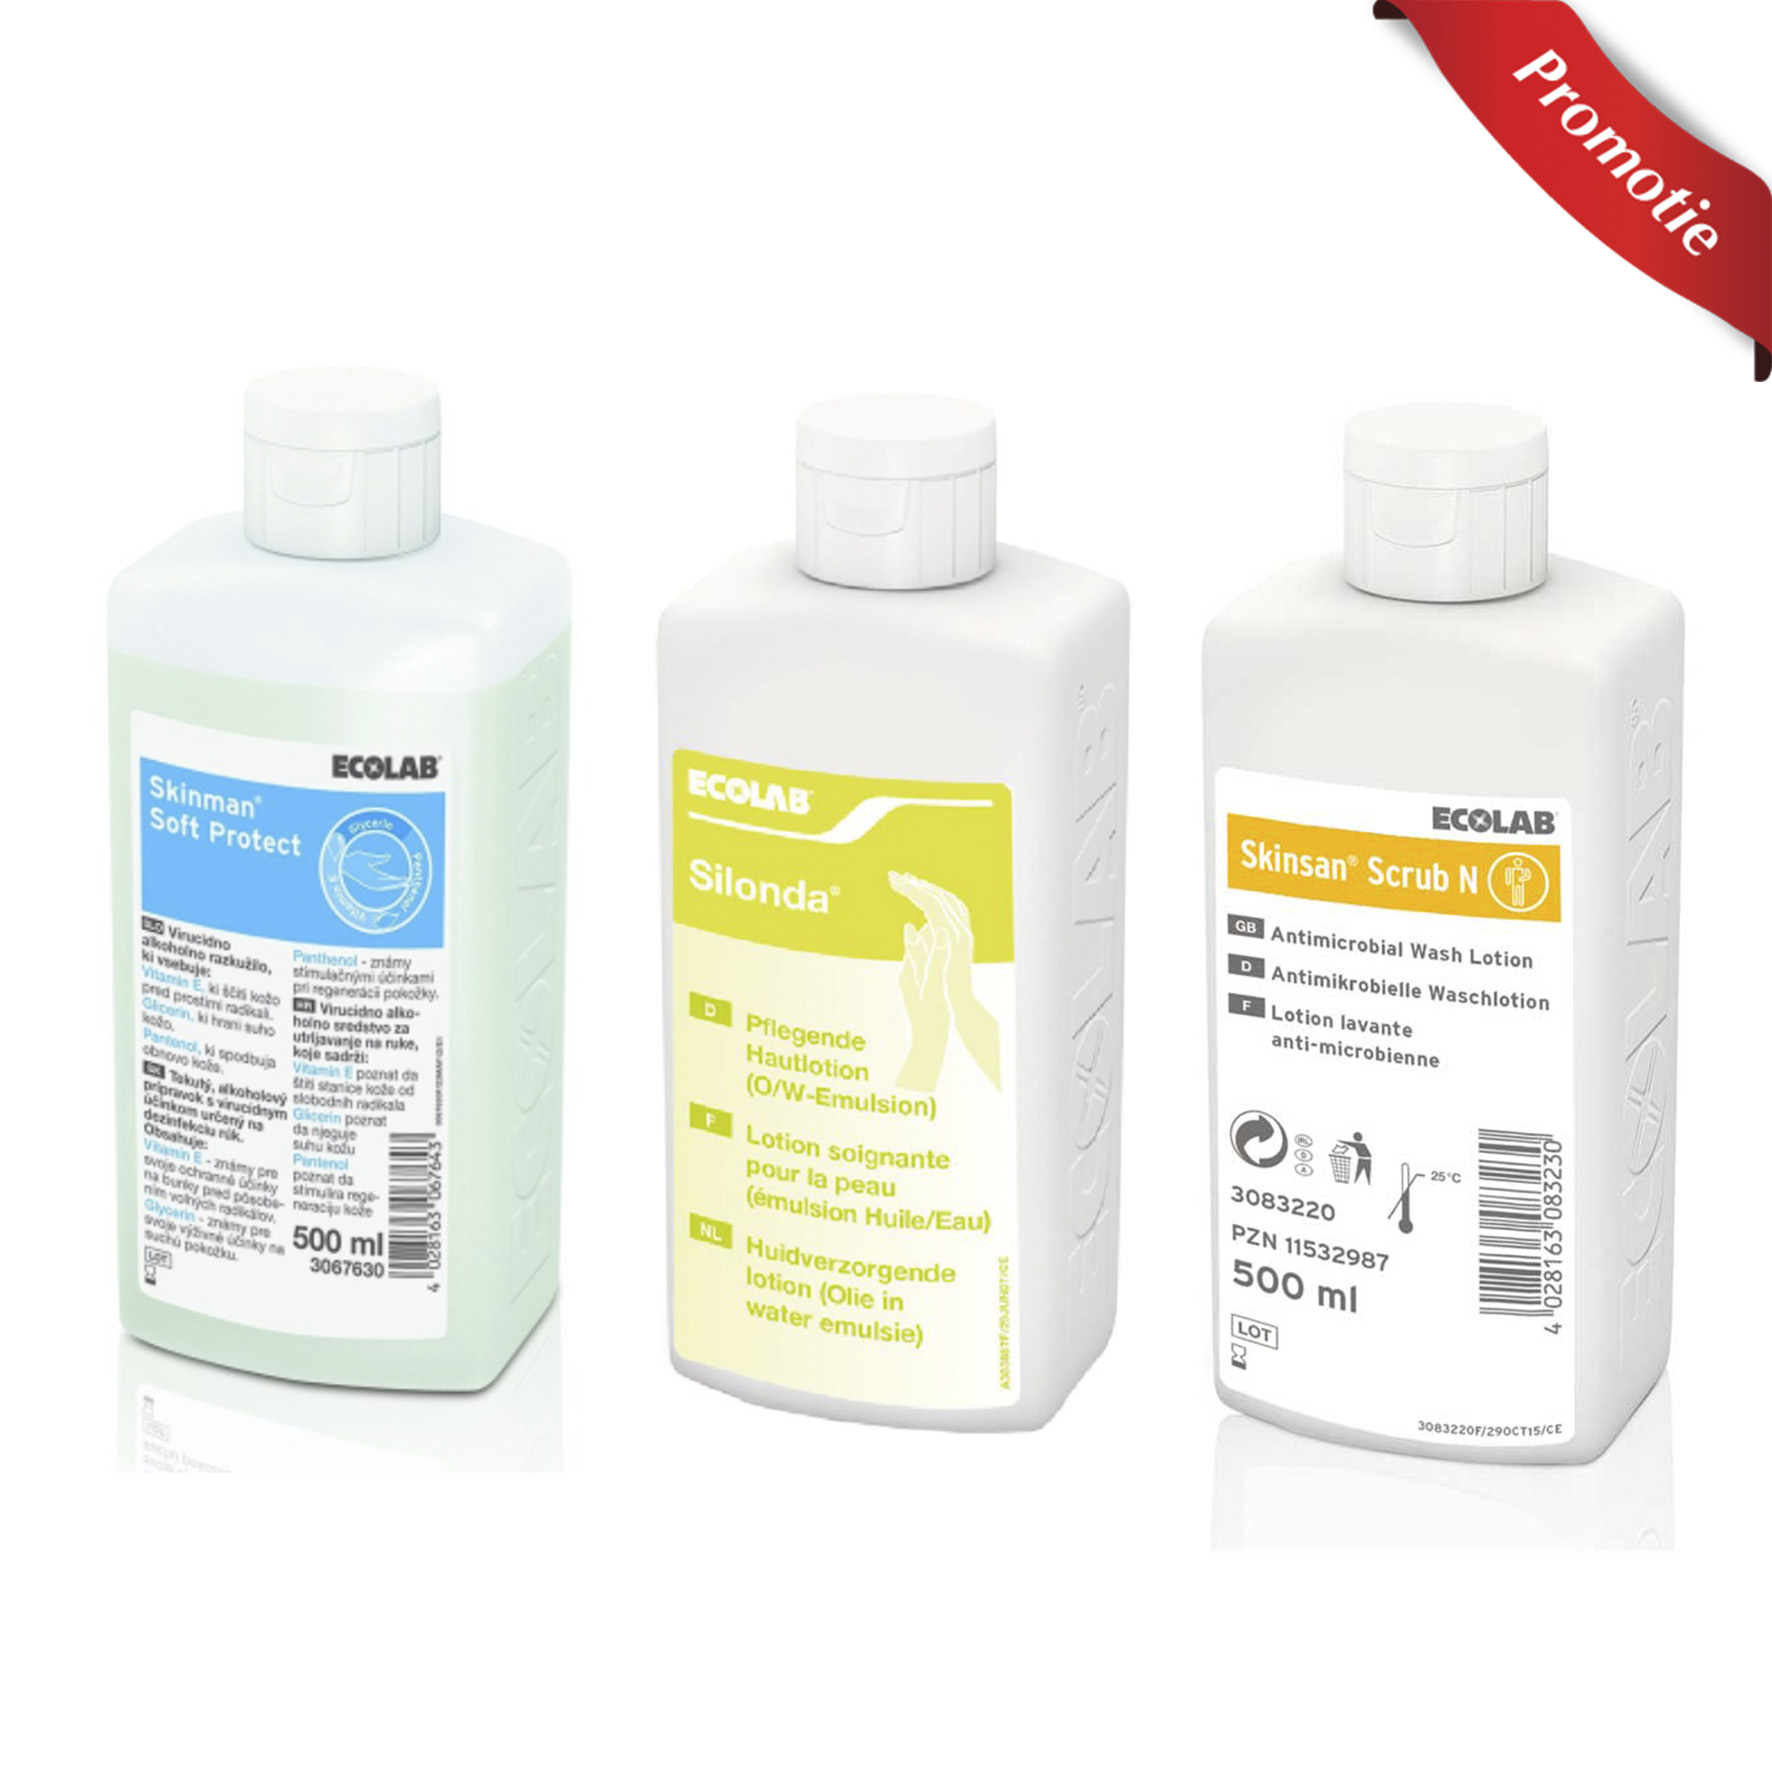 Pachet pentru dezinfectarea si ingrijirea mainilor - dezinfectant sapun si lotiune Ecolab